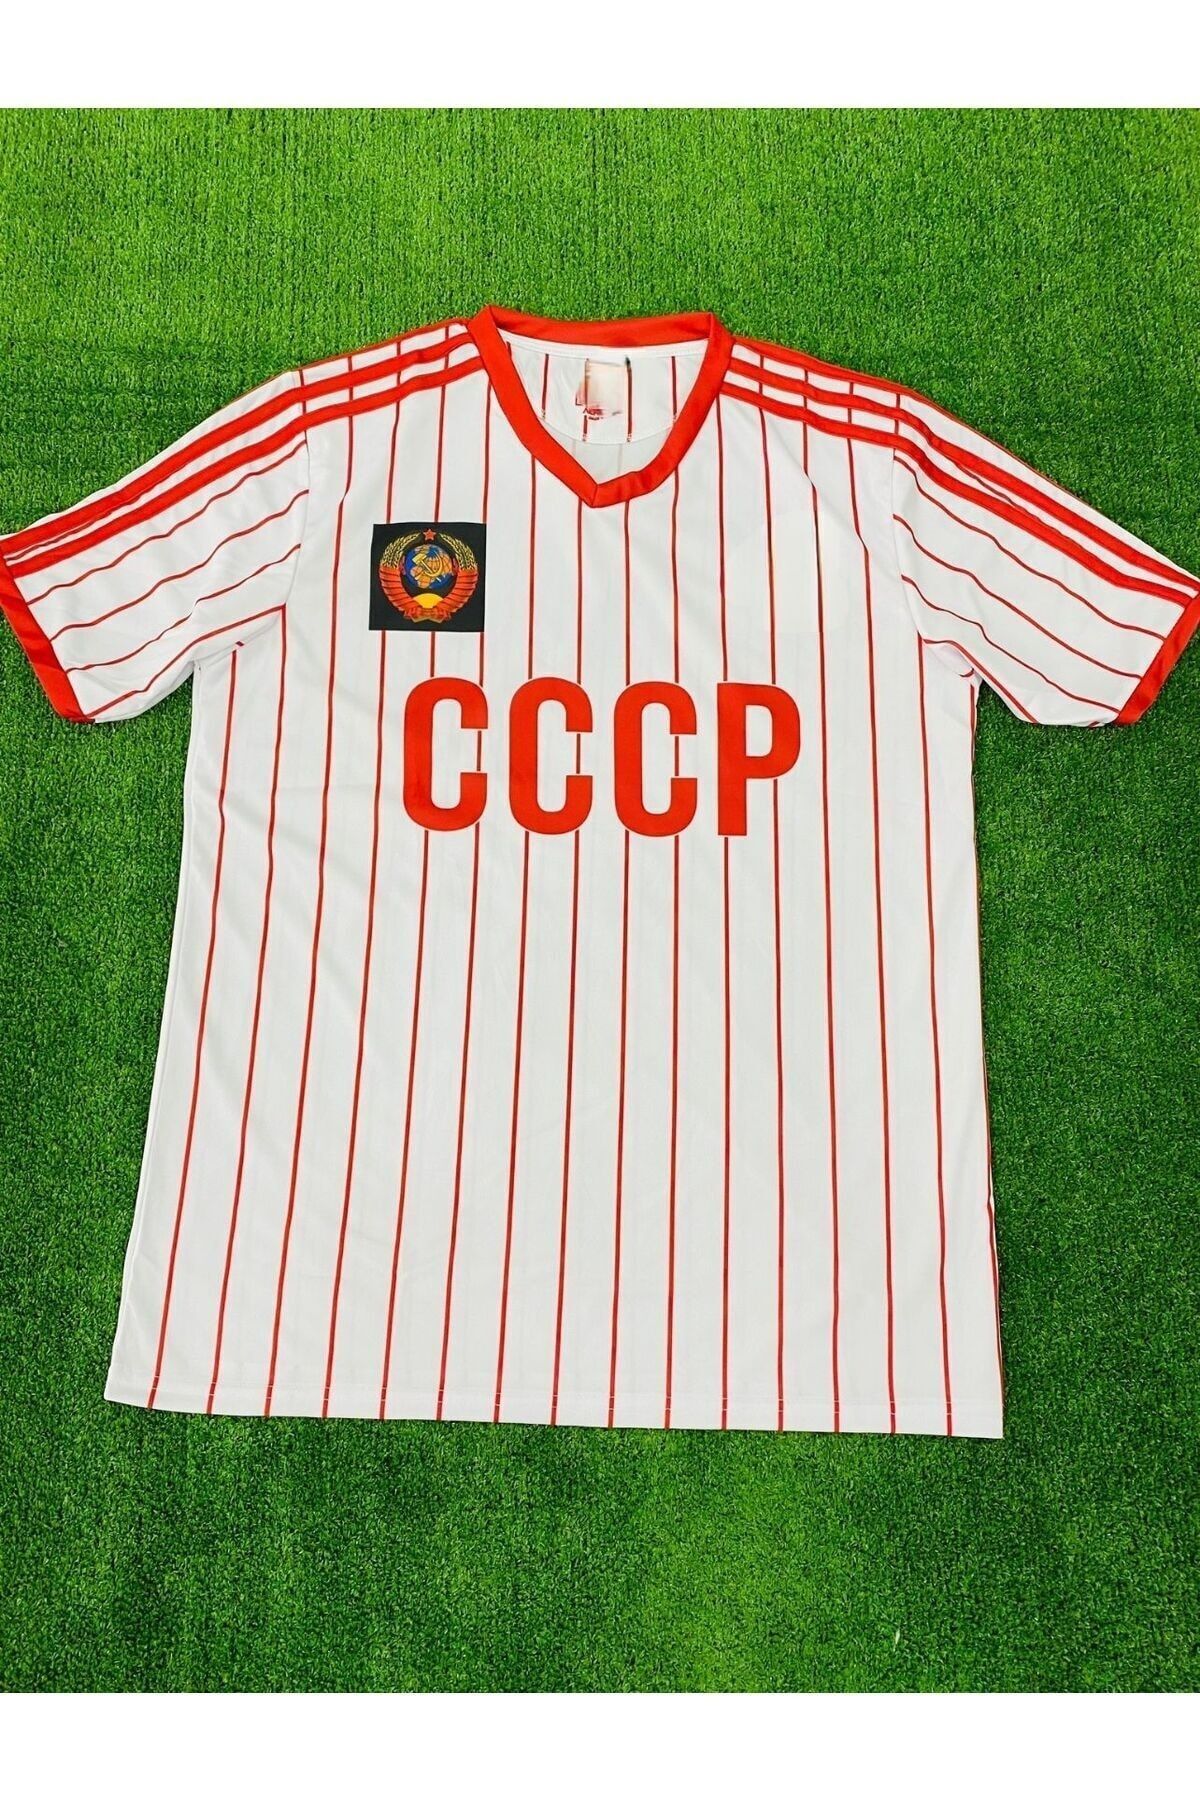 BYSPORTAKUS 01 Cio Baba Cccp Sovyetler Birliği Forması